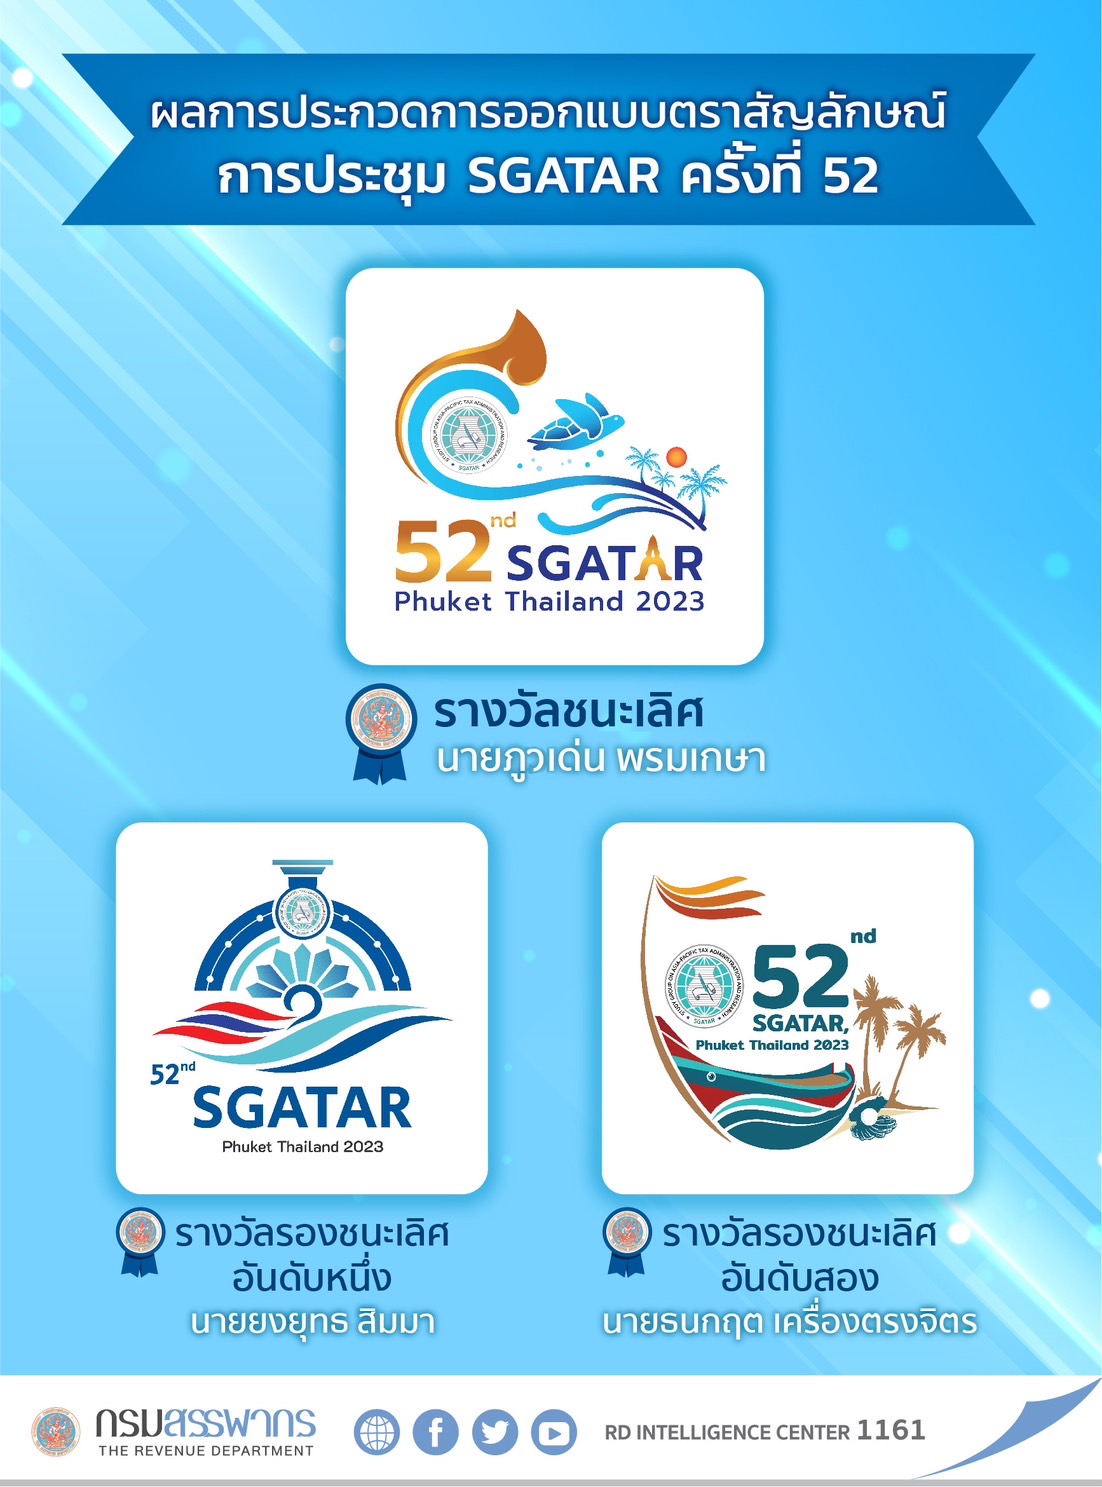 ประกาศผลรางวัลการประกวดออกแบบตราสัญลักษณ์ การประชุม SGATAR ครั้งที่ 52 กรมสรรพากรจะทำการติดต่อกลับผู้ที่มีรายชื่อได้รับรางวัล